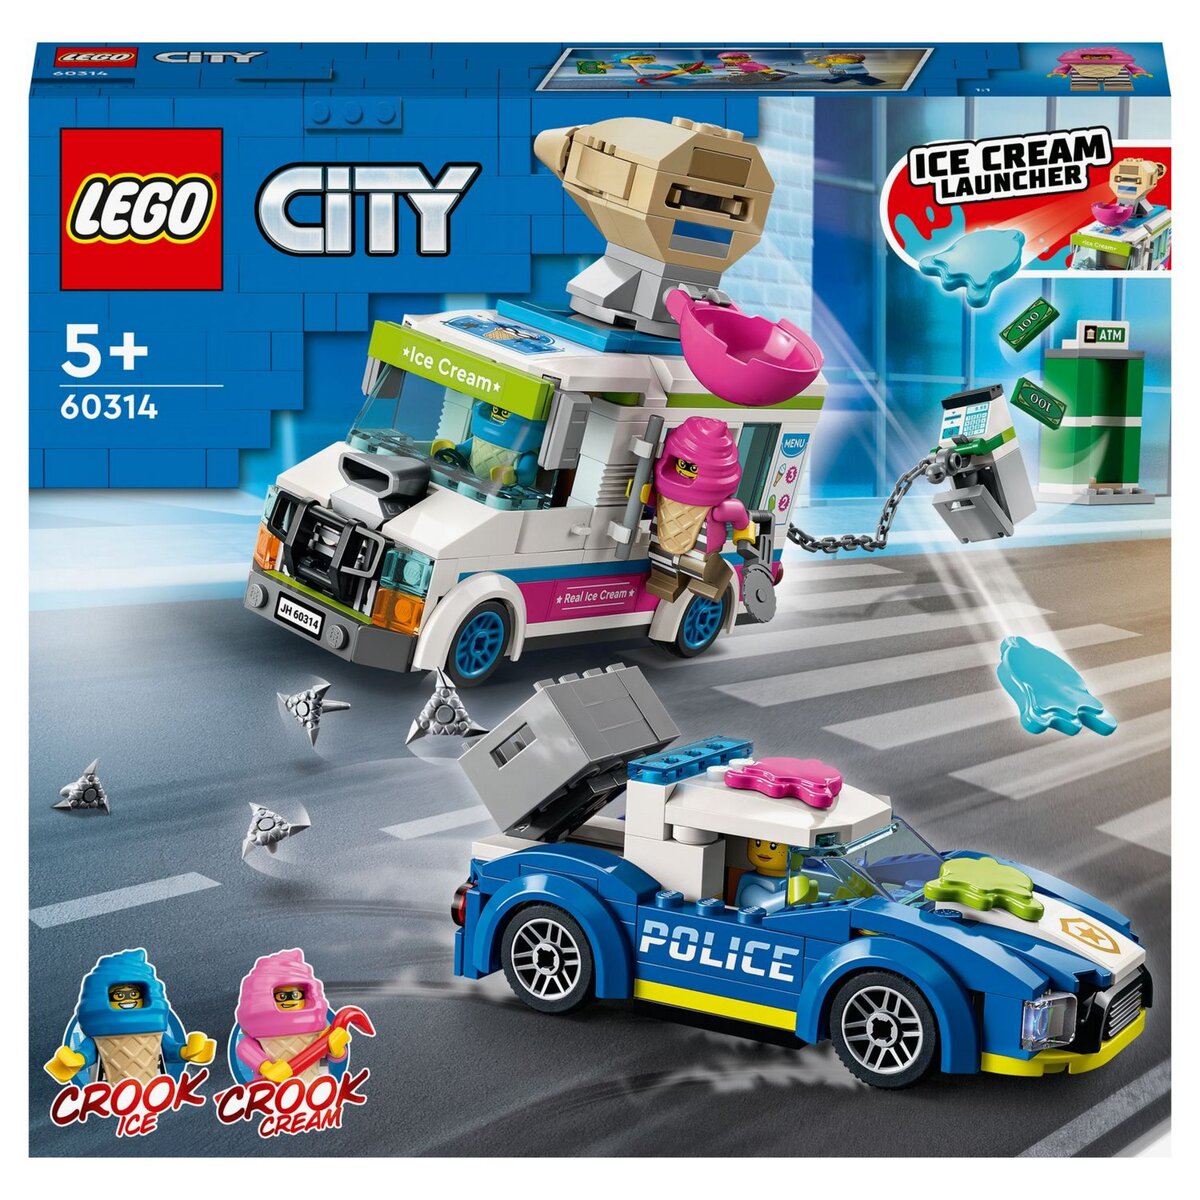 Minifigure LEGO® City - Petite fille - Super Briques